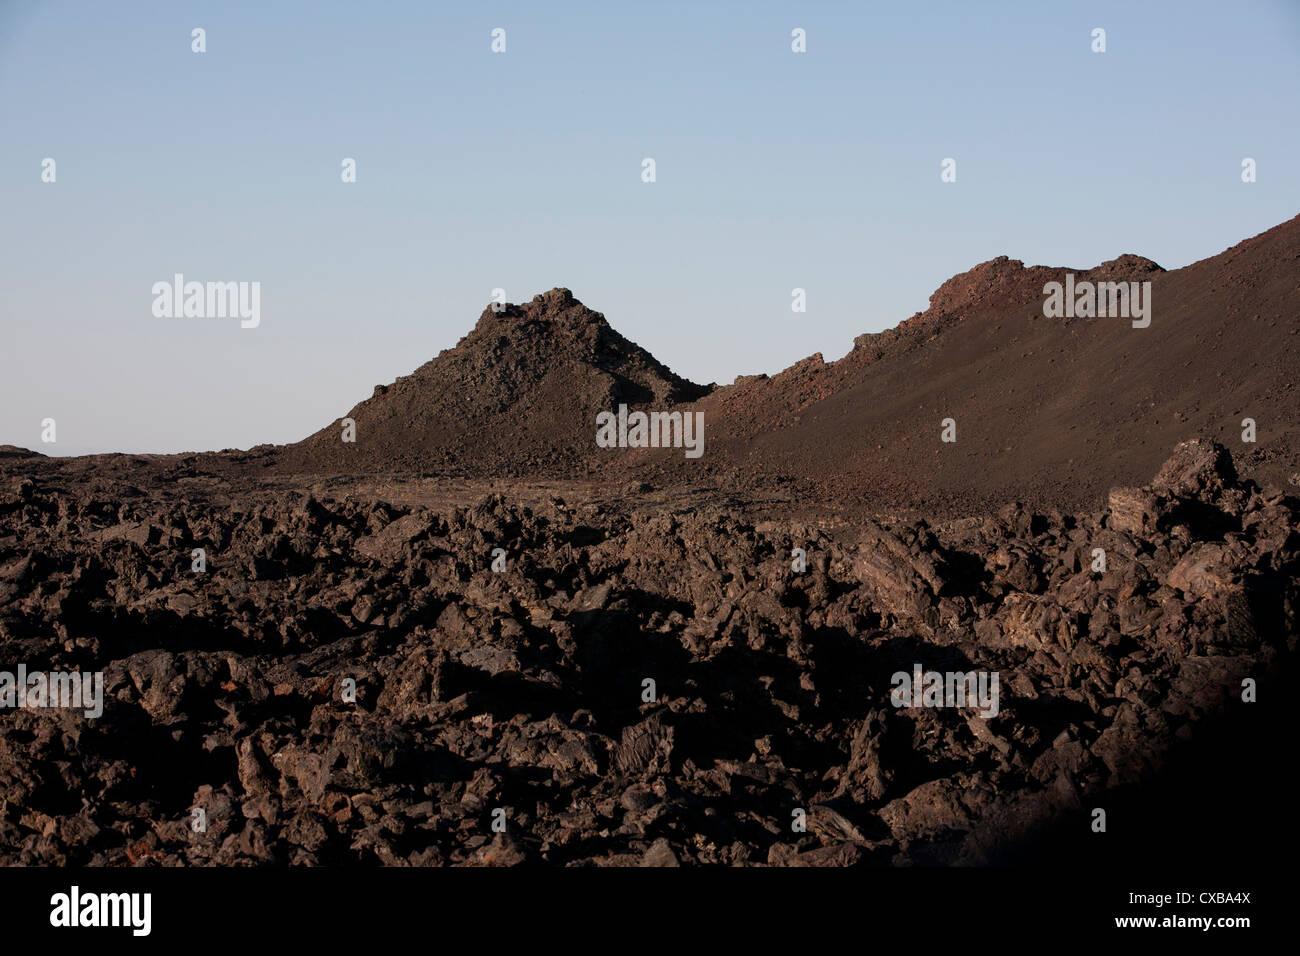 Des projections de lave et de cône, cratères de la Lune National Monument, ID. Banque D'Images